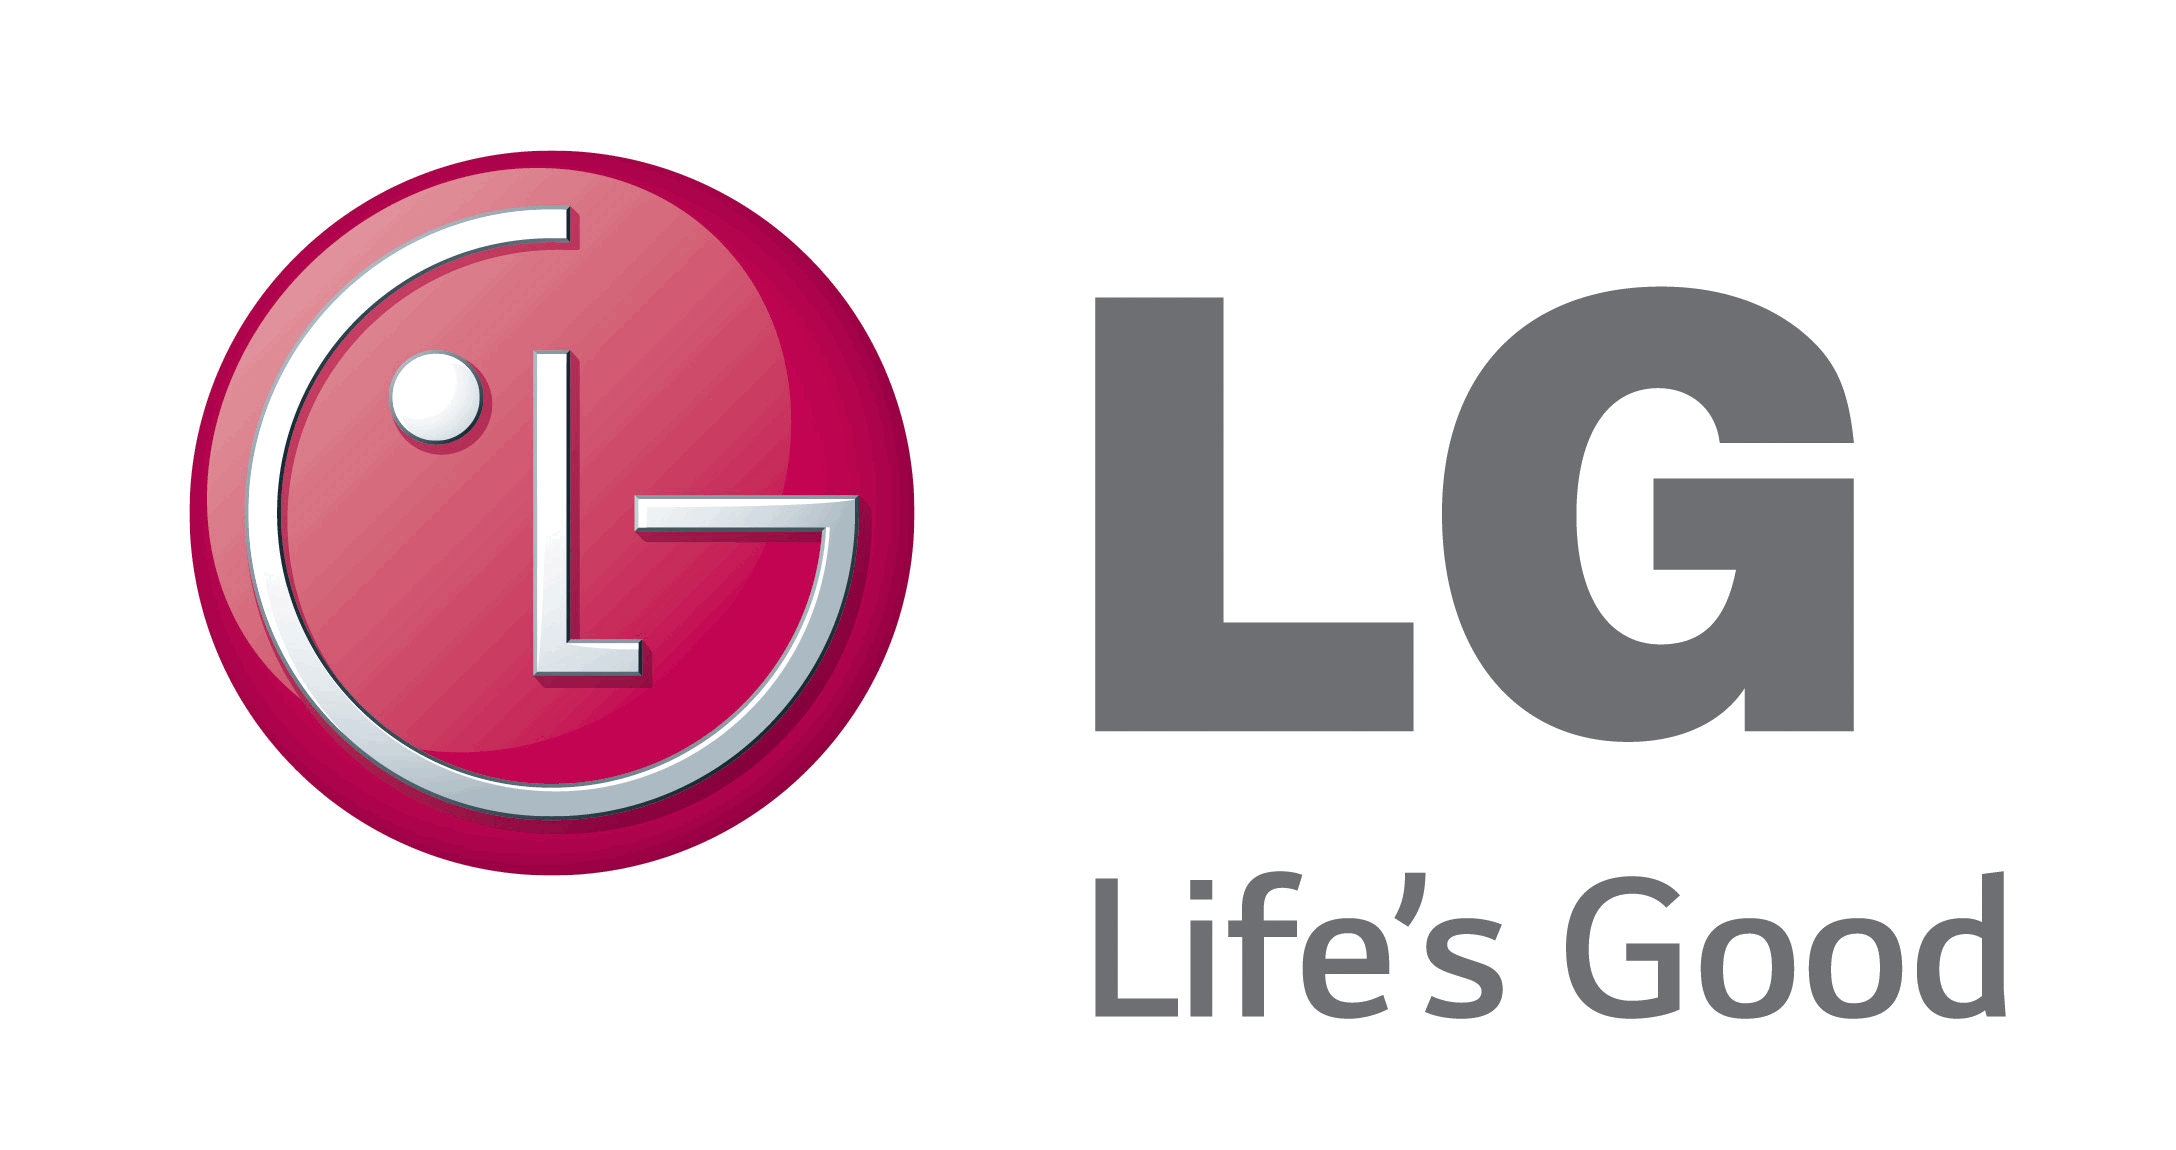 LG G2 mini LTE não envia email